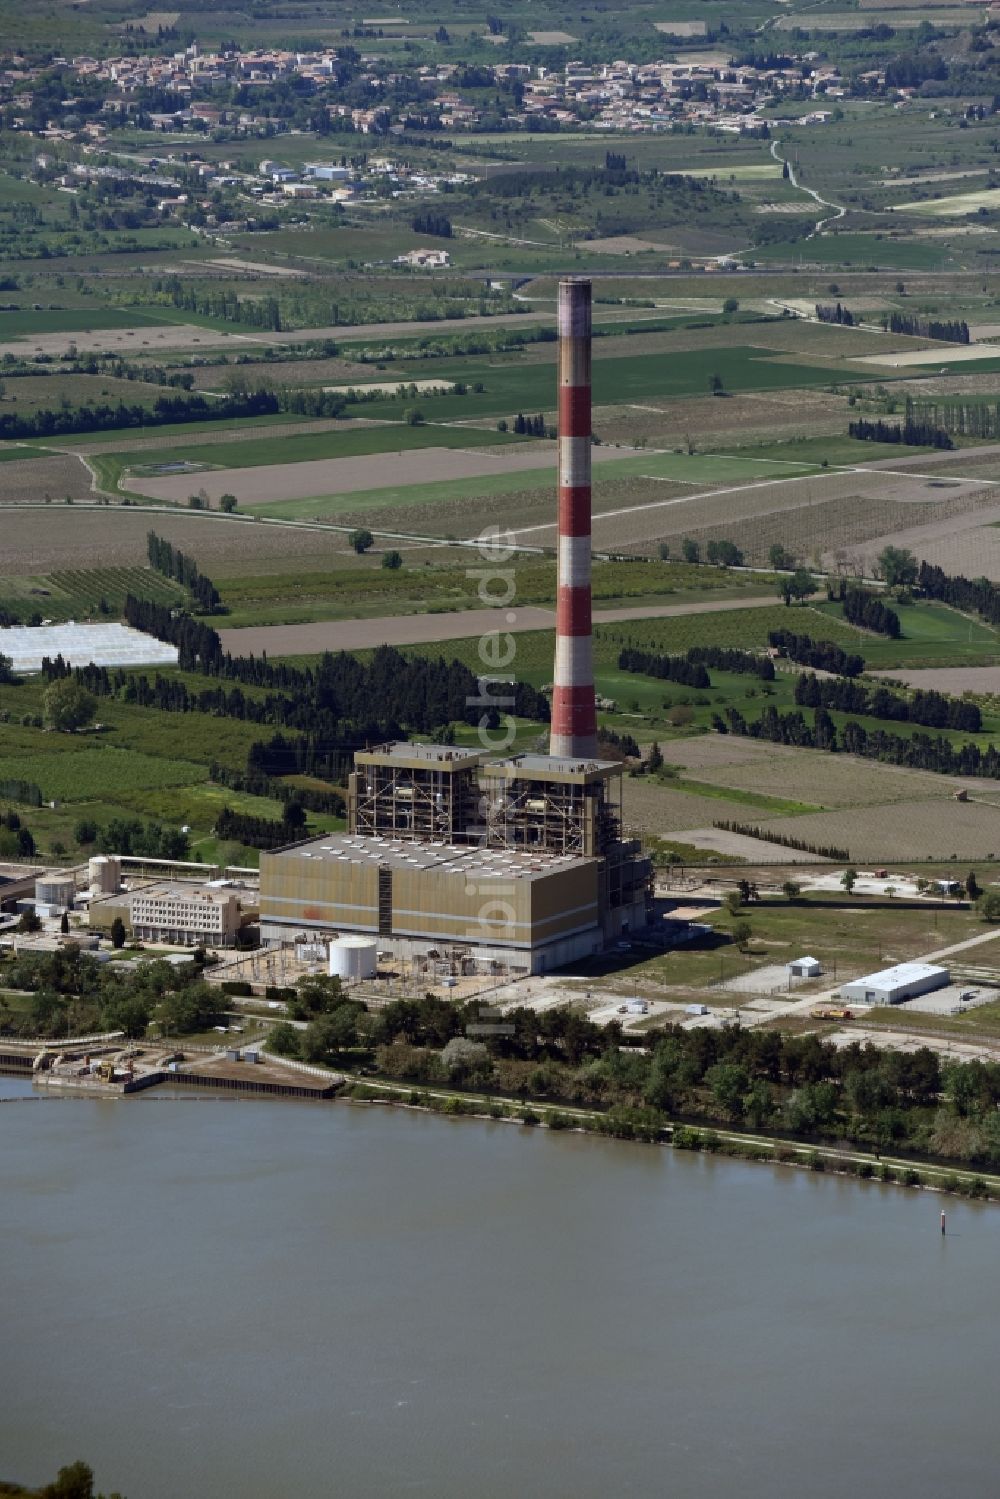 Luftbild Aramon - Reaktorblöcke und Anlagen des AKW - KKW Kernkraftwerk in Aramon in Languedoc-Roussillon Midi-Pyrenees, Frankreich